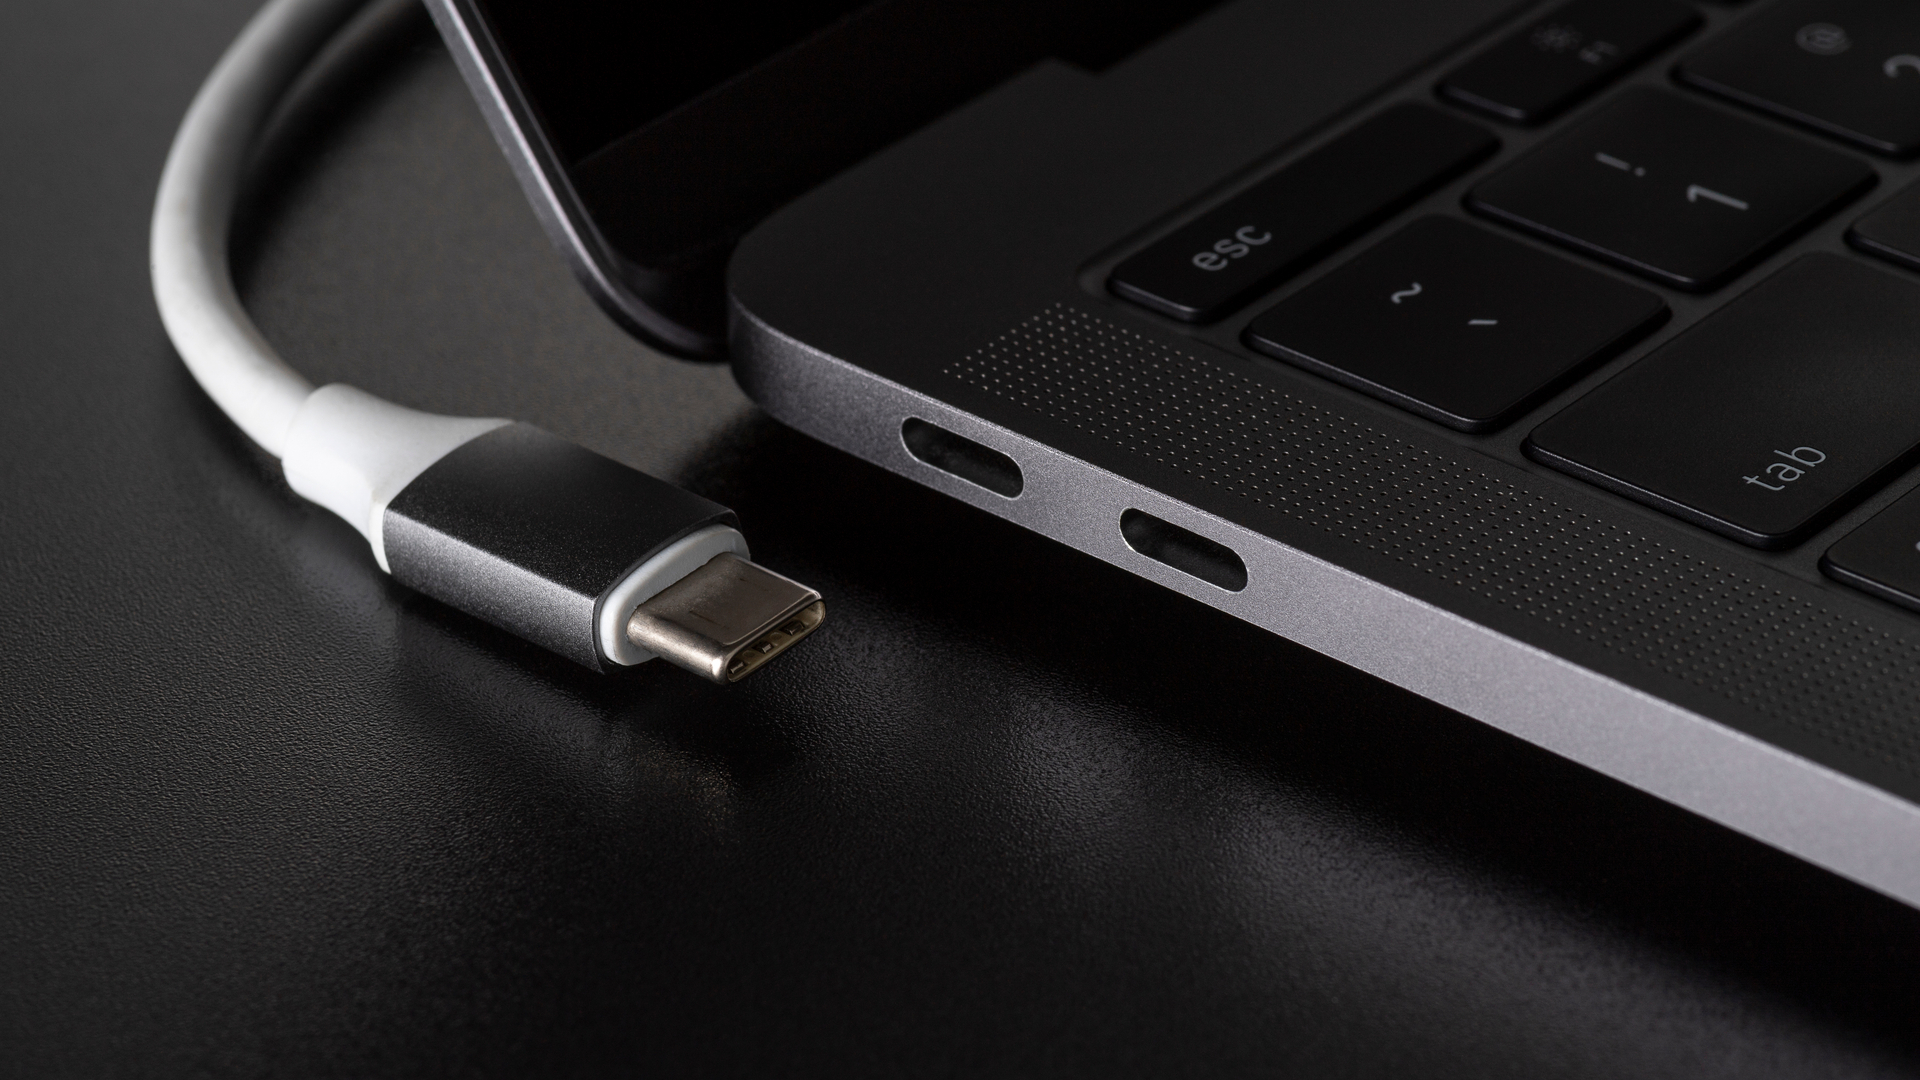 Entenda as vantagens de ter um cabo USB tipo C em 2021 - TecMundo